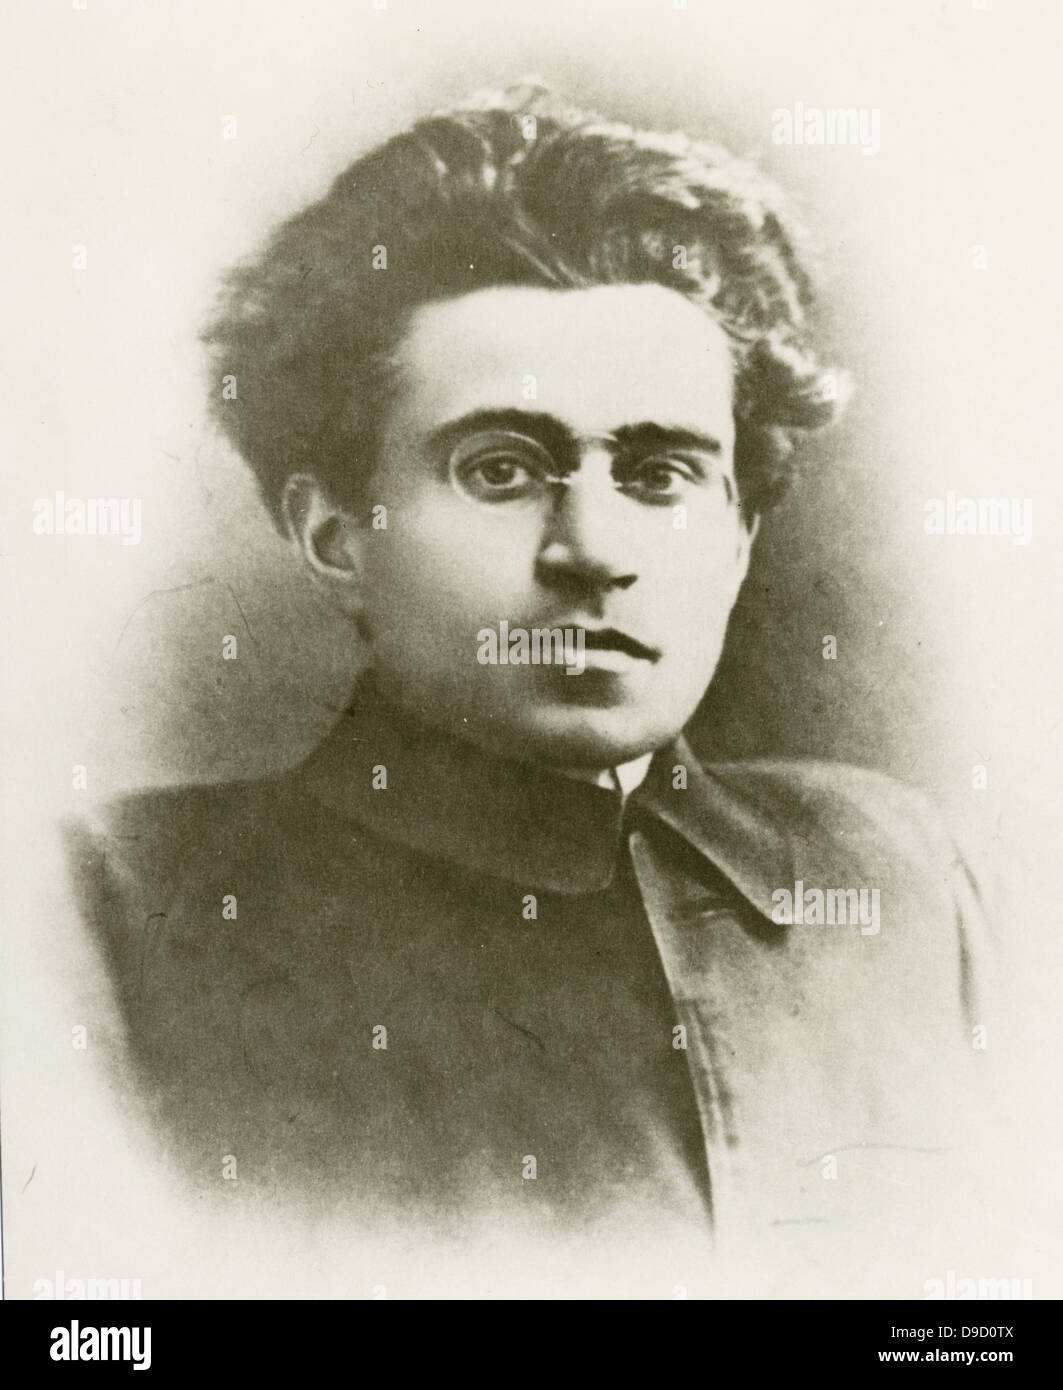 Antonio Gramsci (1891-1937), italienischer Schriftsteller, politischer Philosoph, marxistischen Denker und Sprachwissenschaftler. Gründungsmitglied und Führer der Kommunistischen Partei Italiens. Von Benito Mussolinis faschistisches Regime inhaftiert. Stockfoto